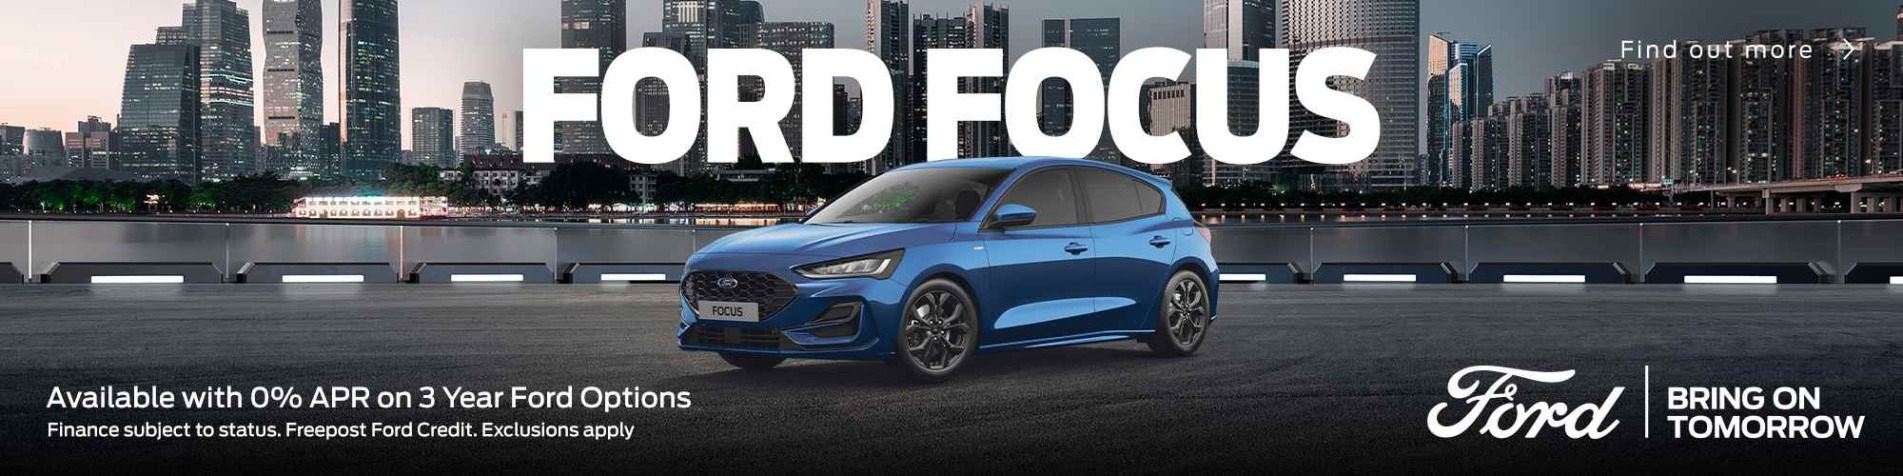 Ford focus q4